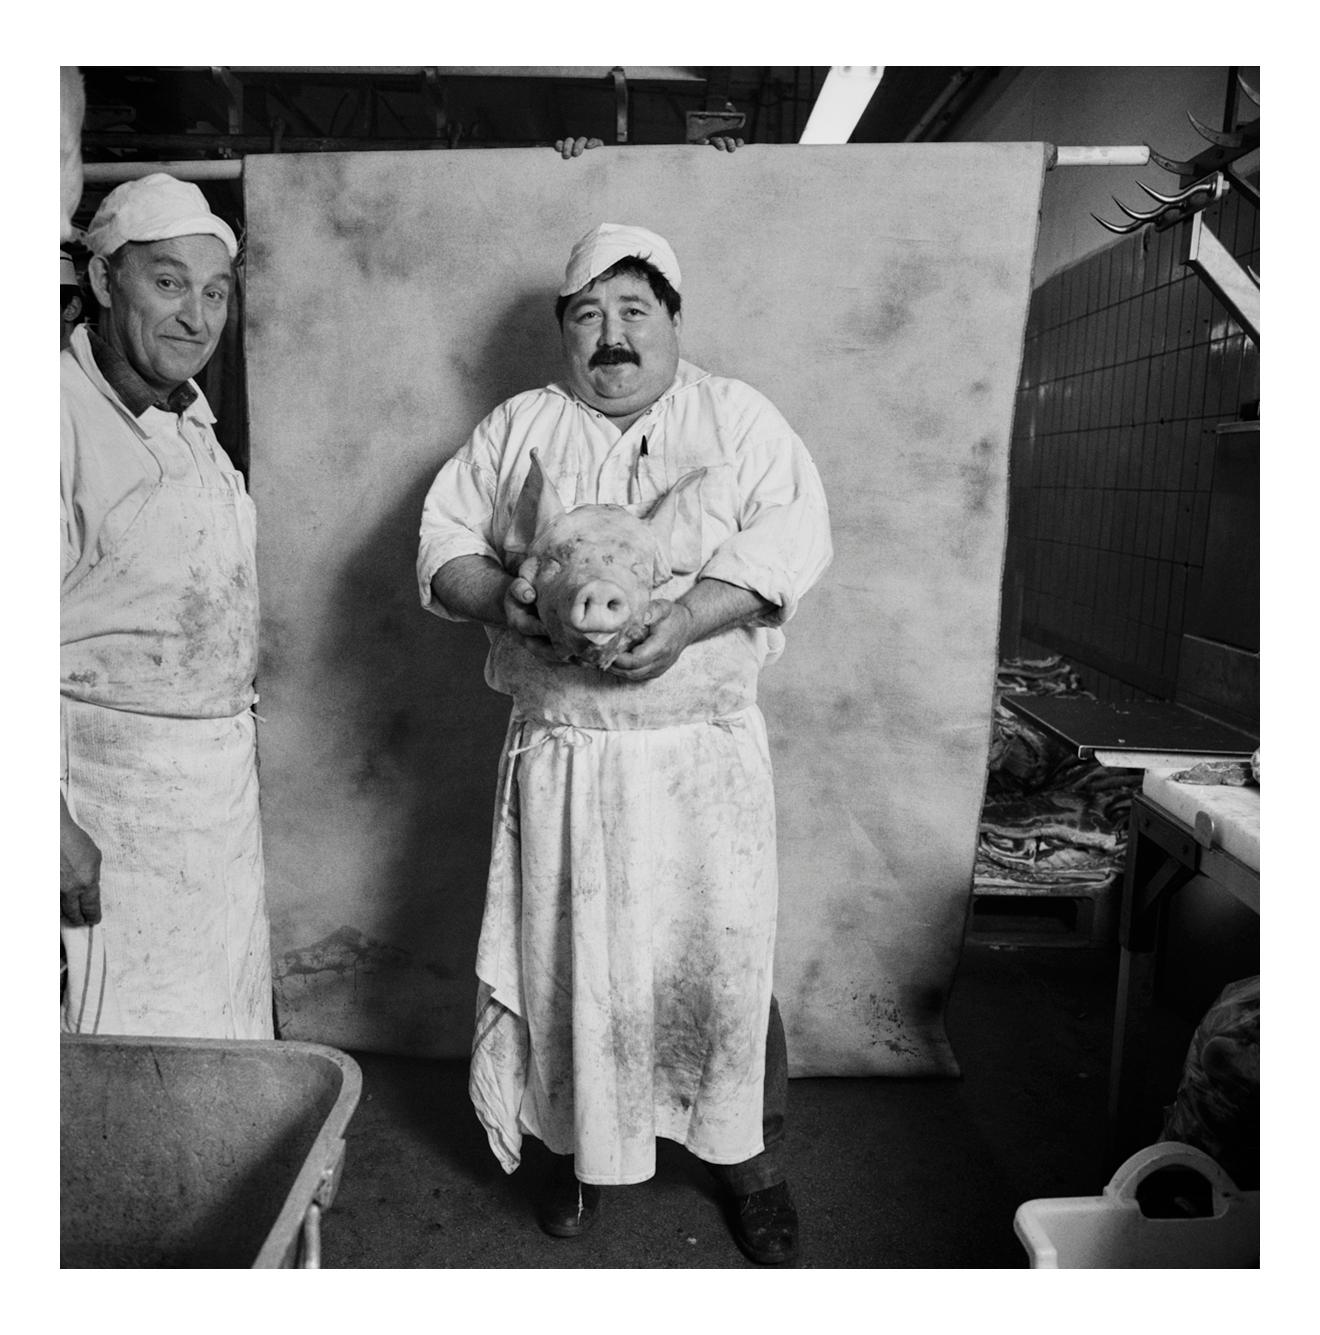 Jonathan Becker Black and White Photograph - Tête de Cochon, Les Halles at Rungis, France, June 1984